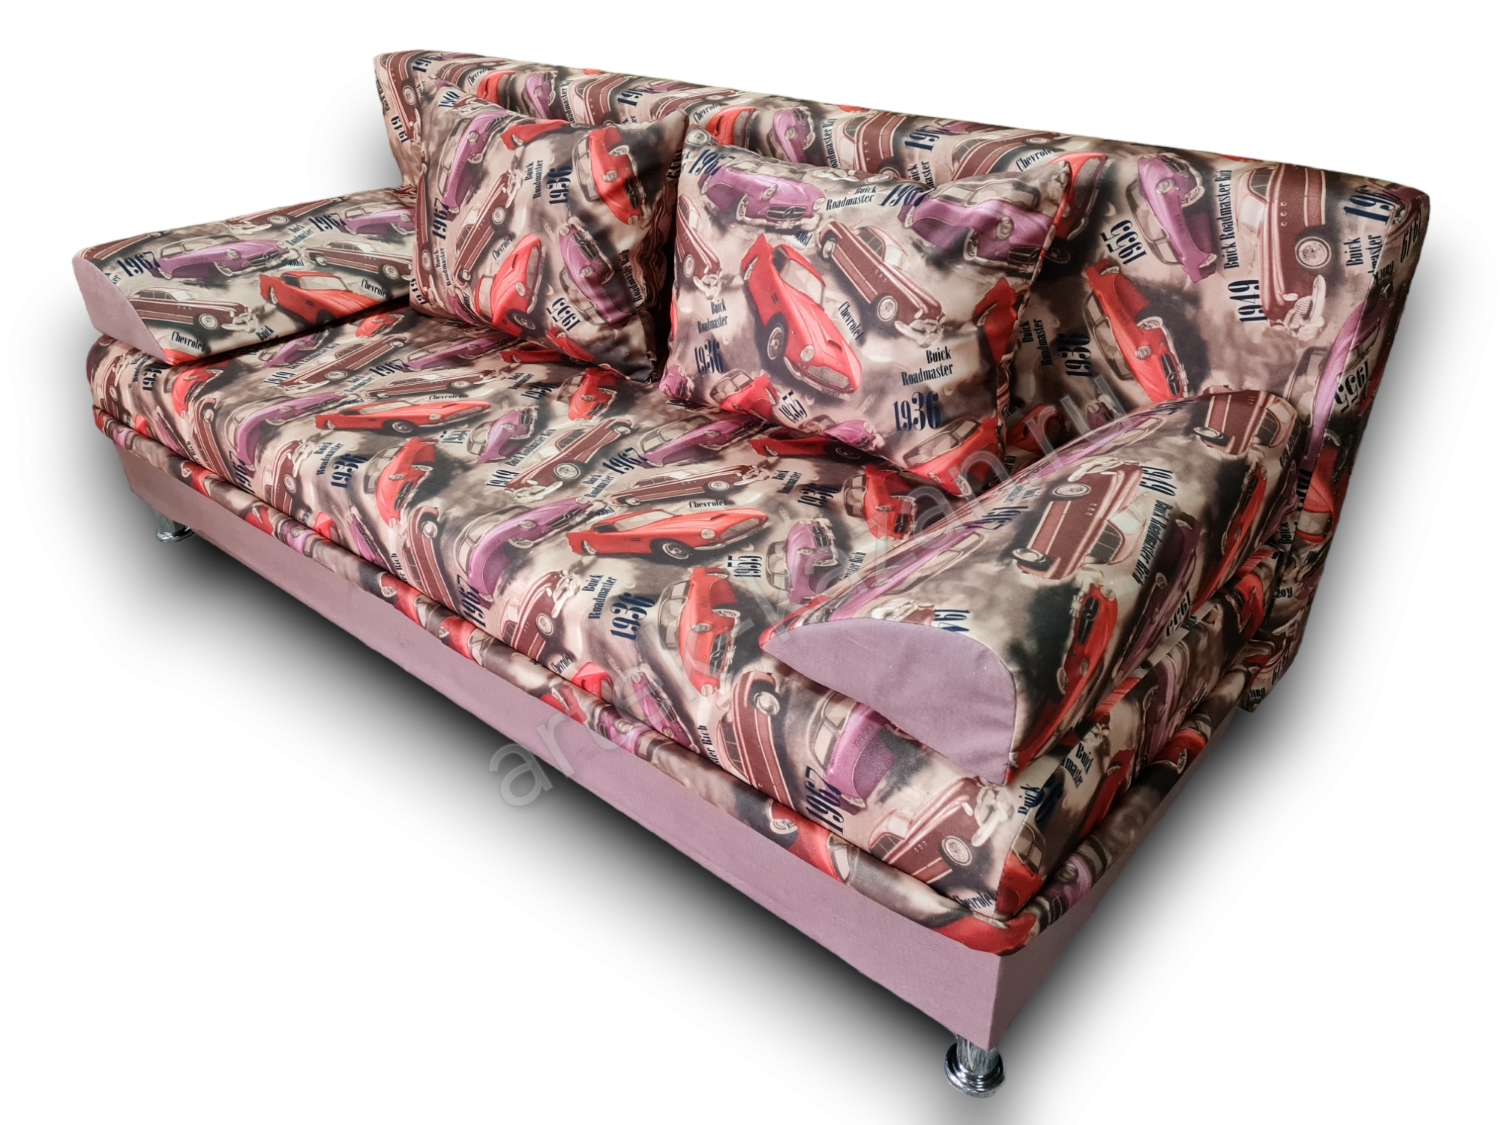 диван еврокнижка Эконом фото № 154. Купить недорогой диван по низкой цене от производителя можно у нас.